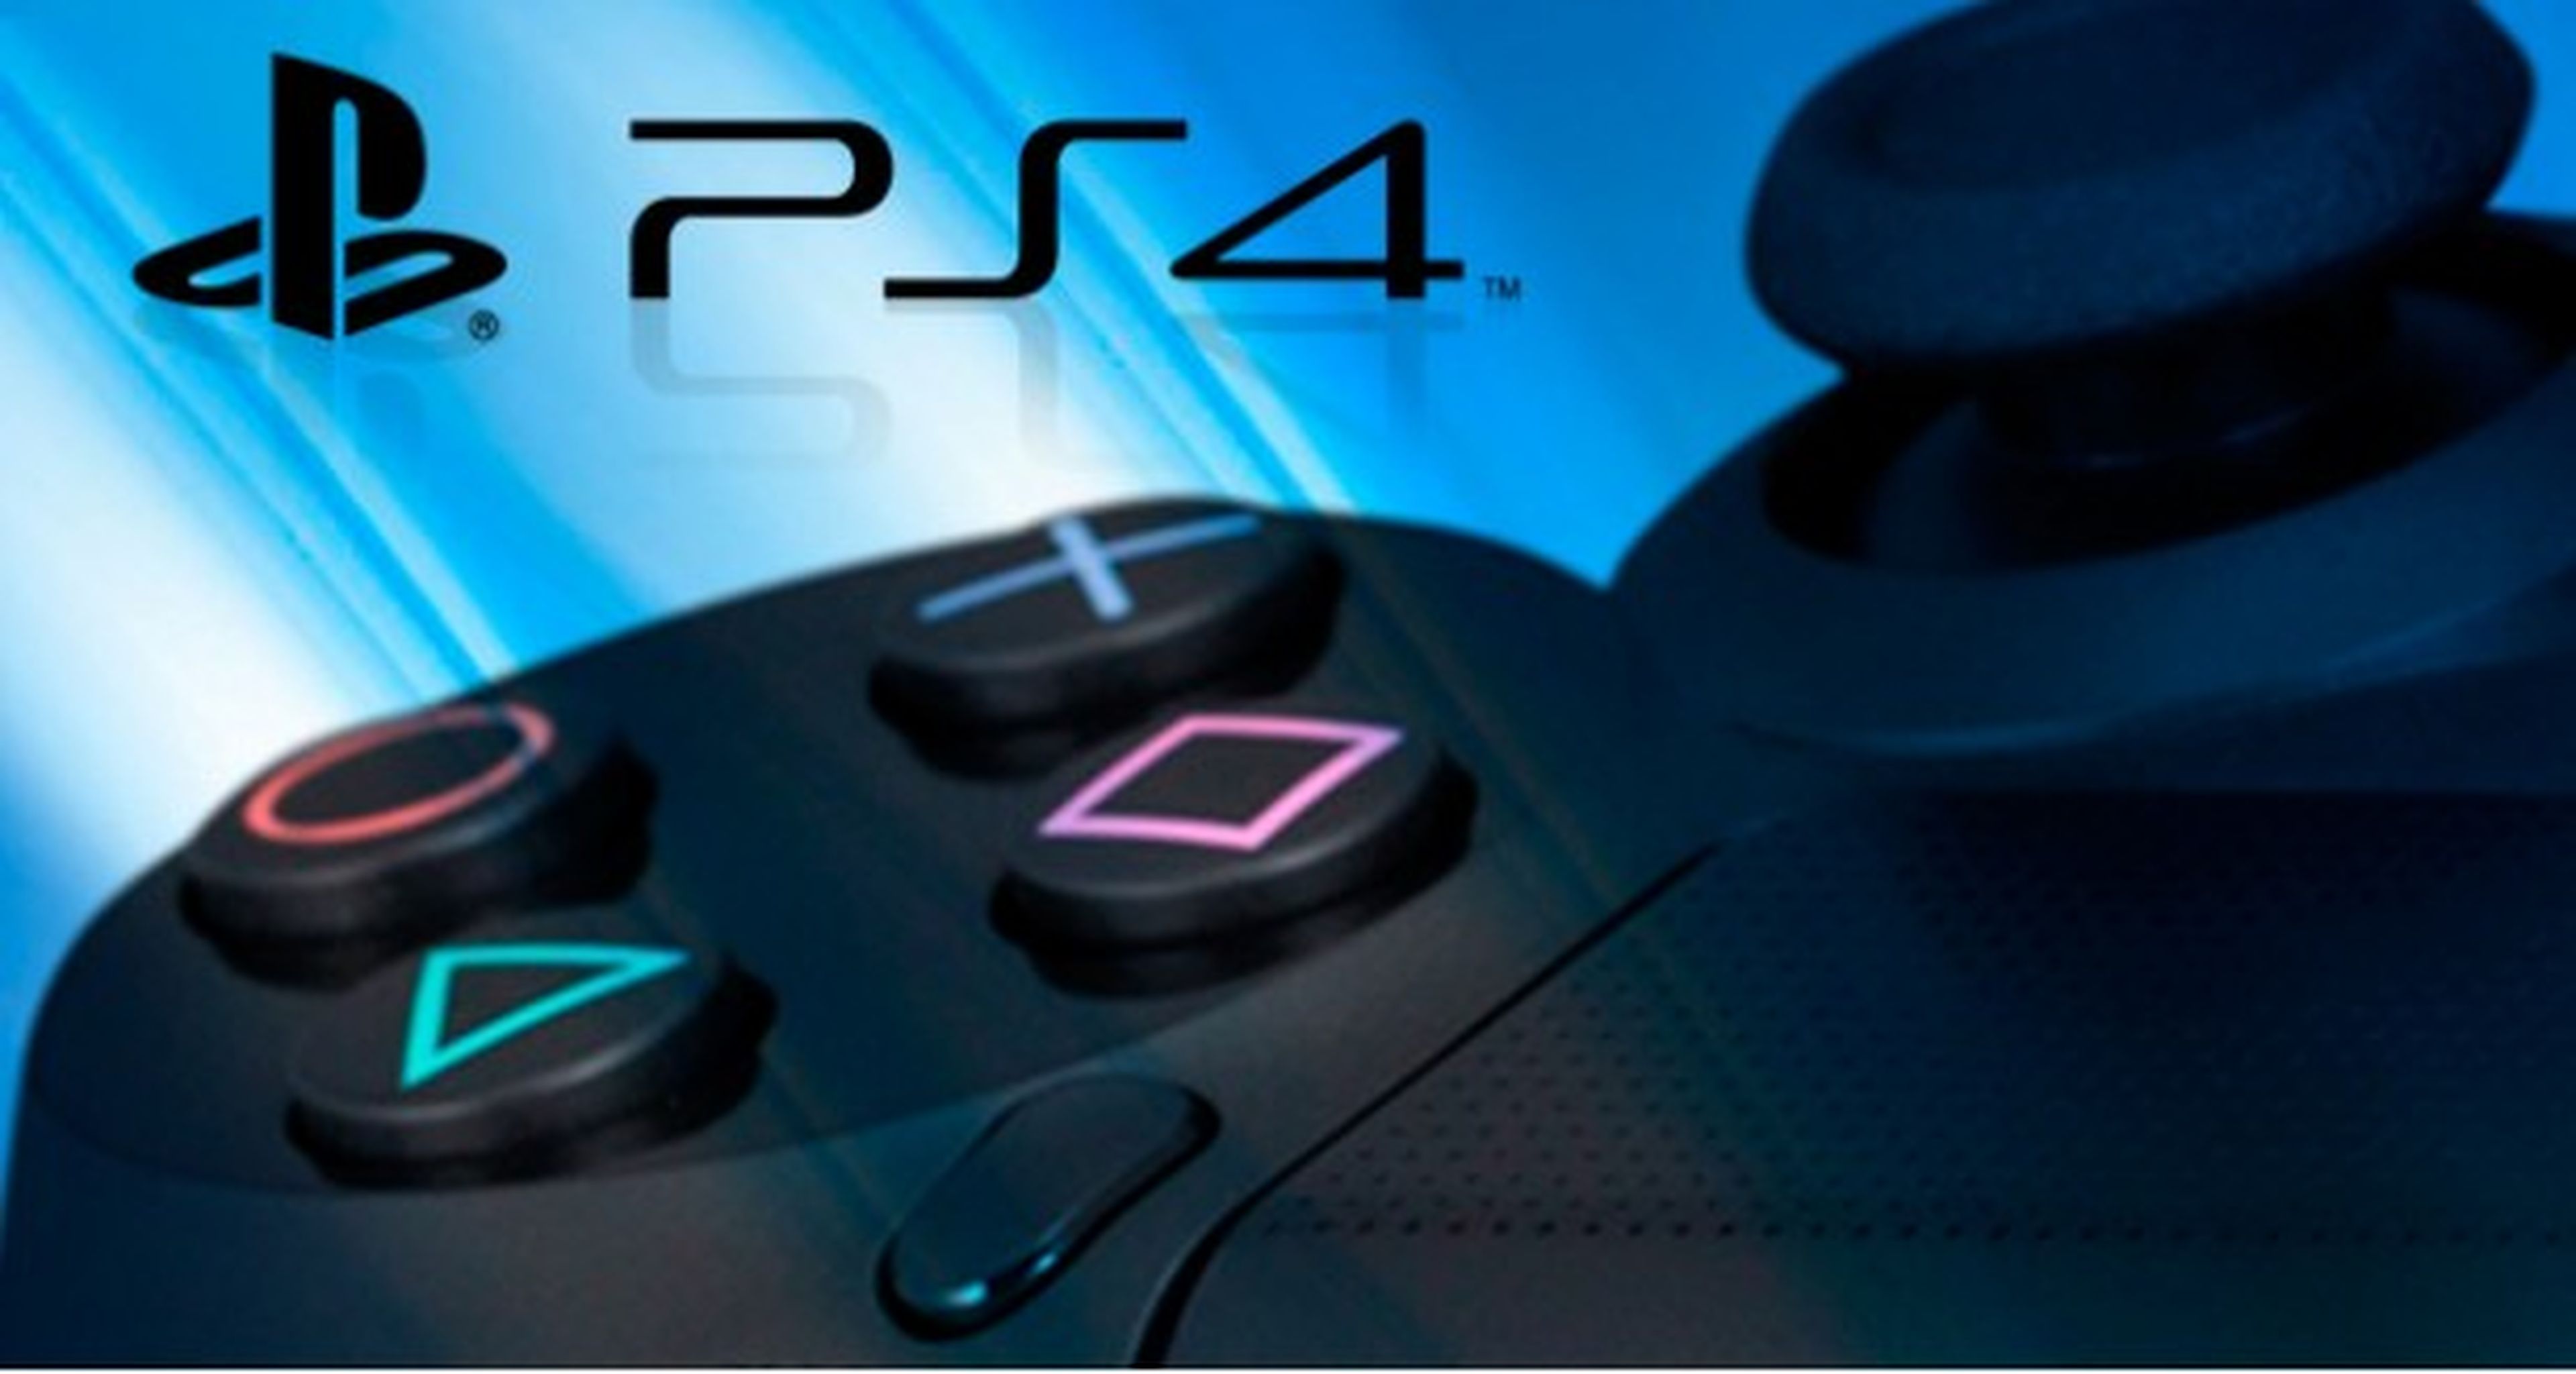 Encuesta: Sony debería haber mostrado PS4 en su presentación